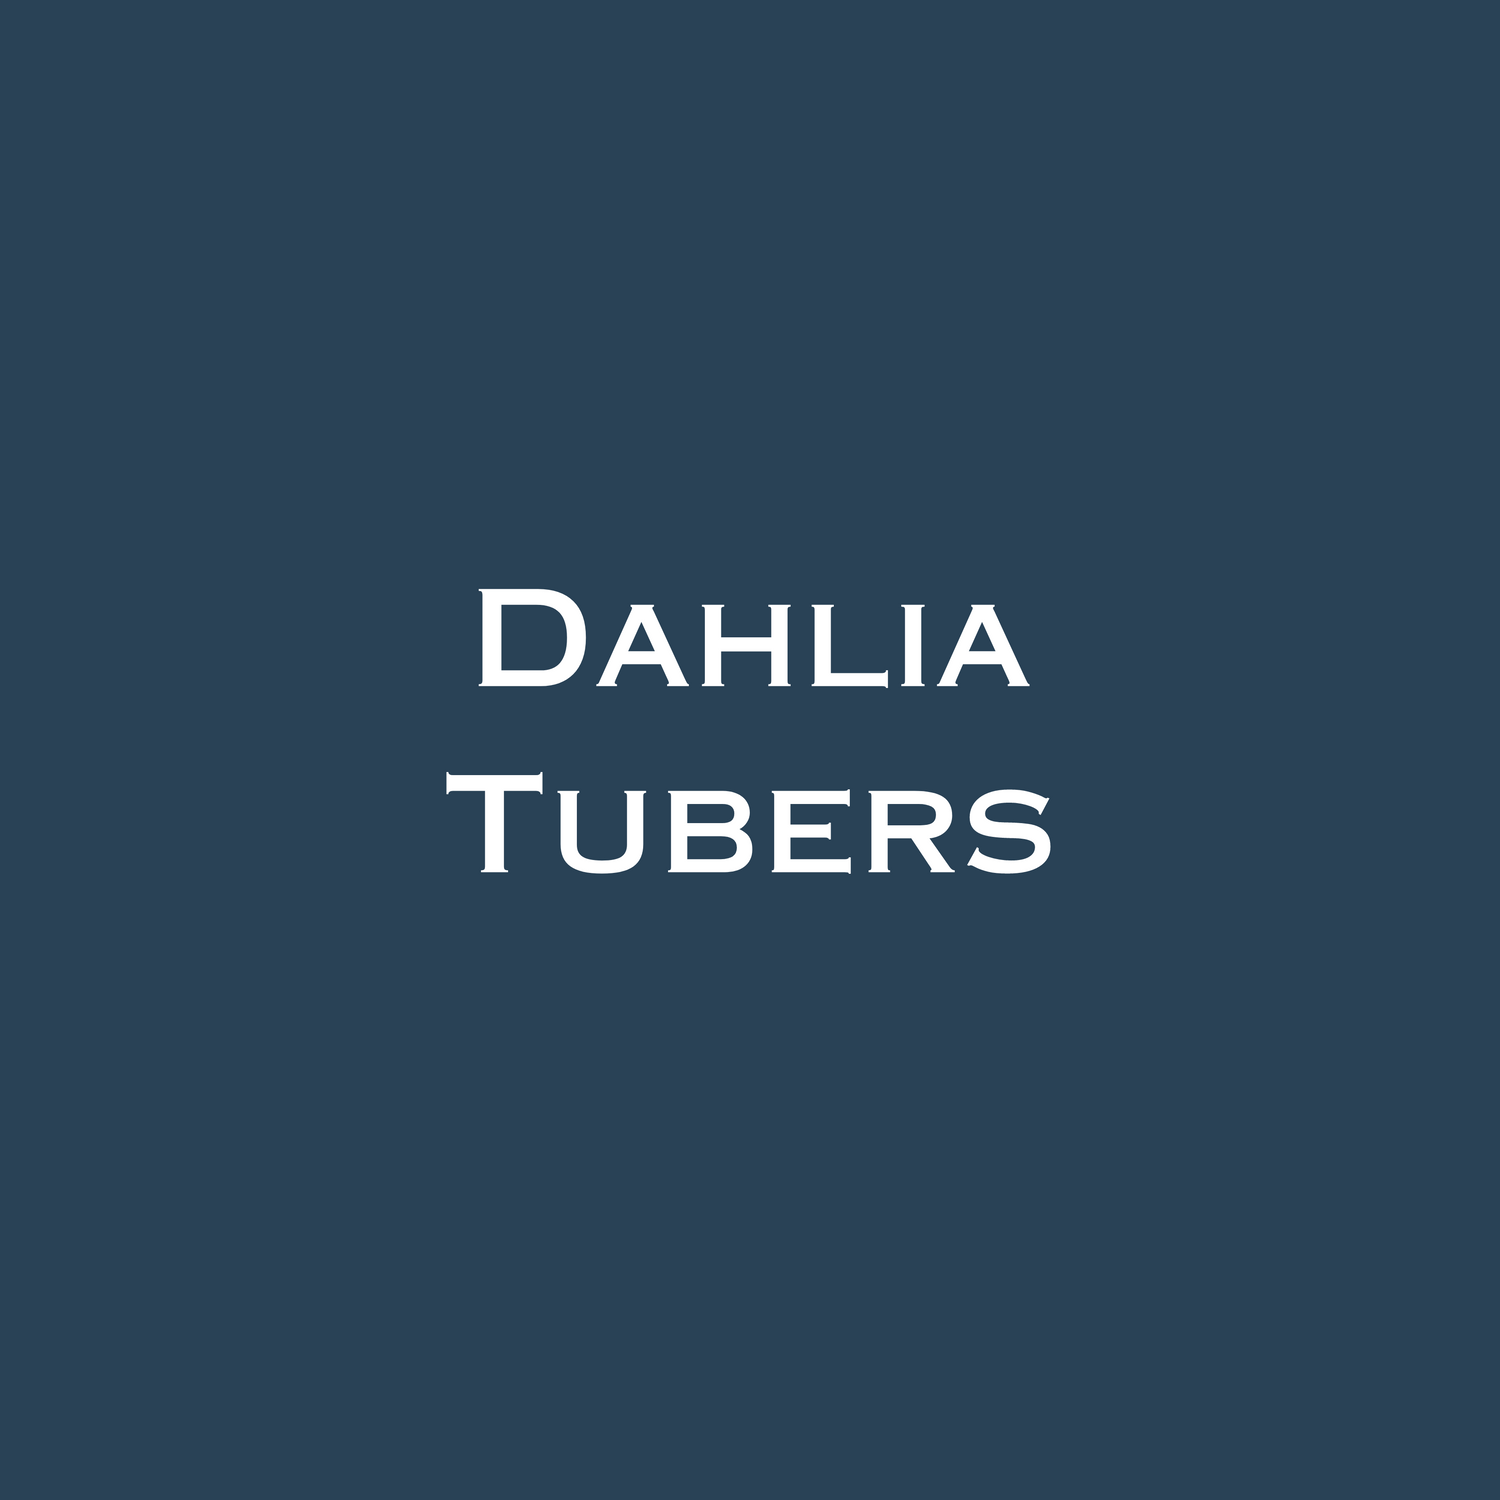 Dahlia Tubers